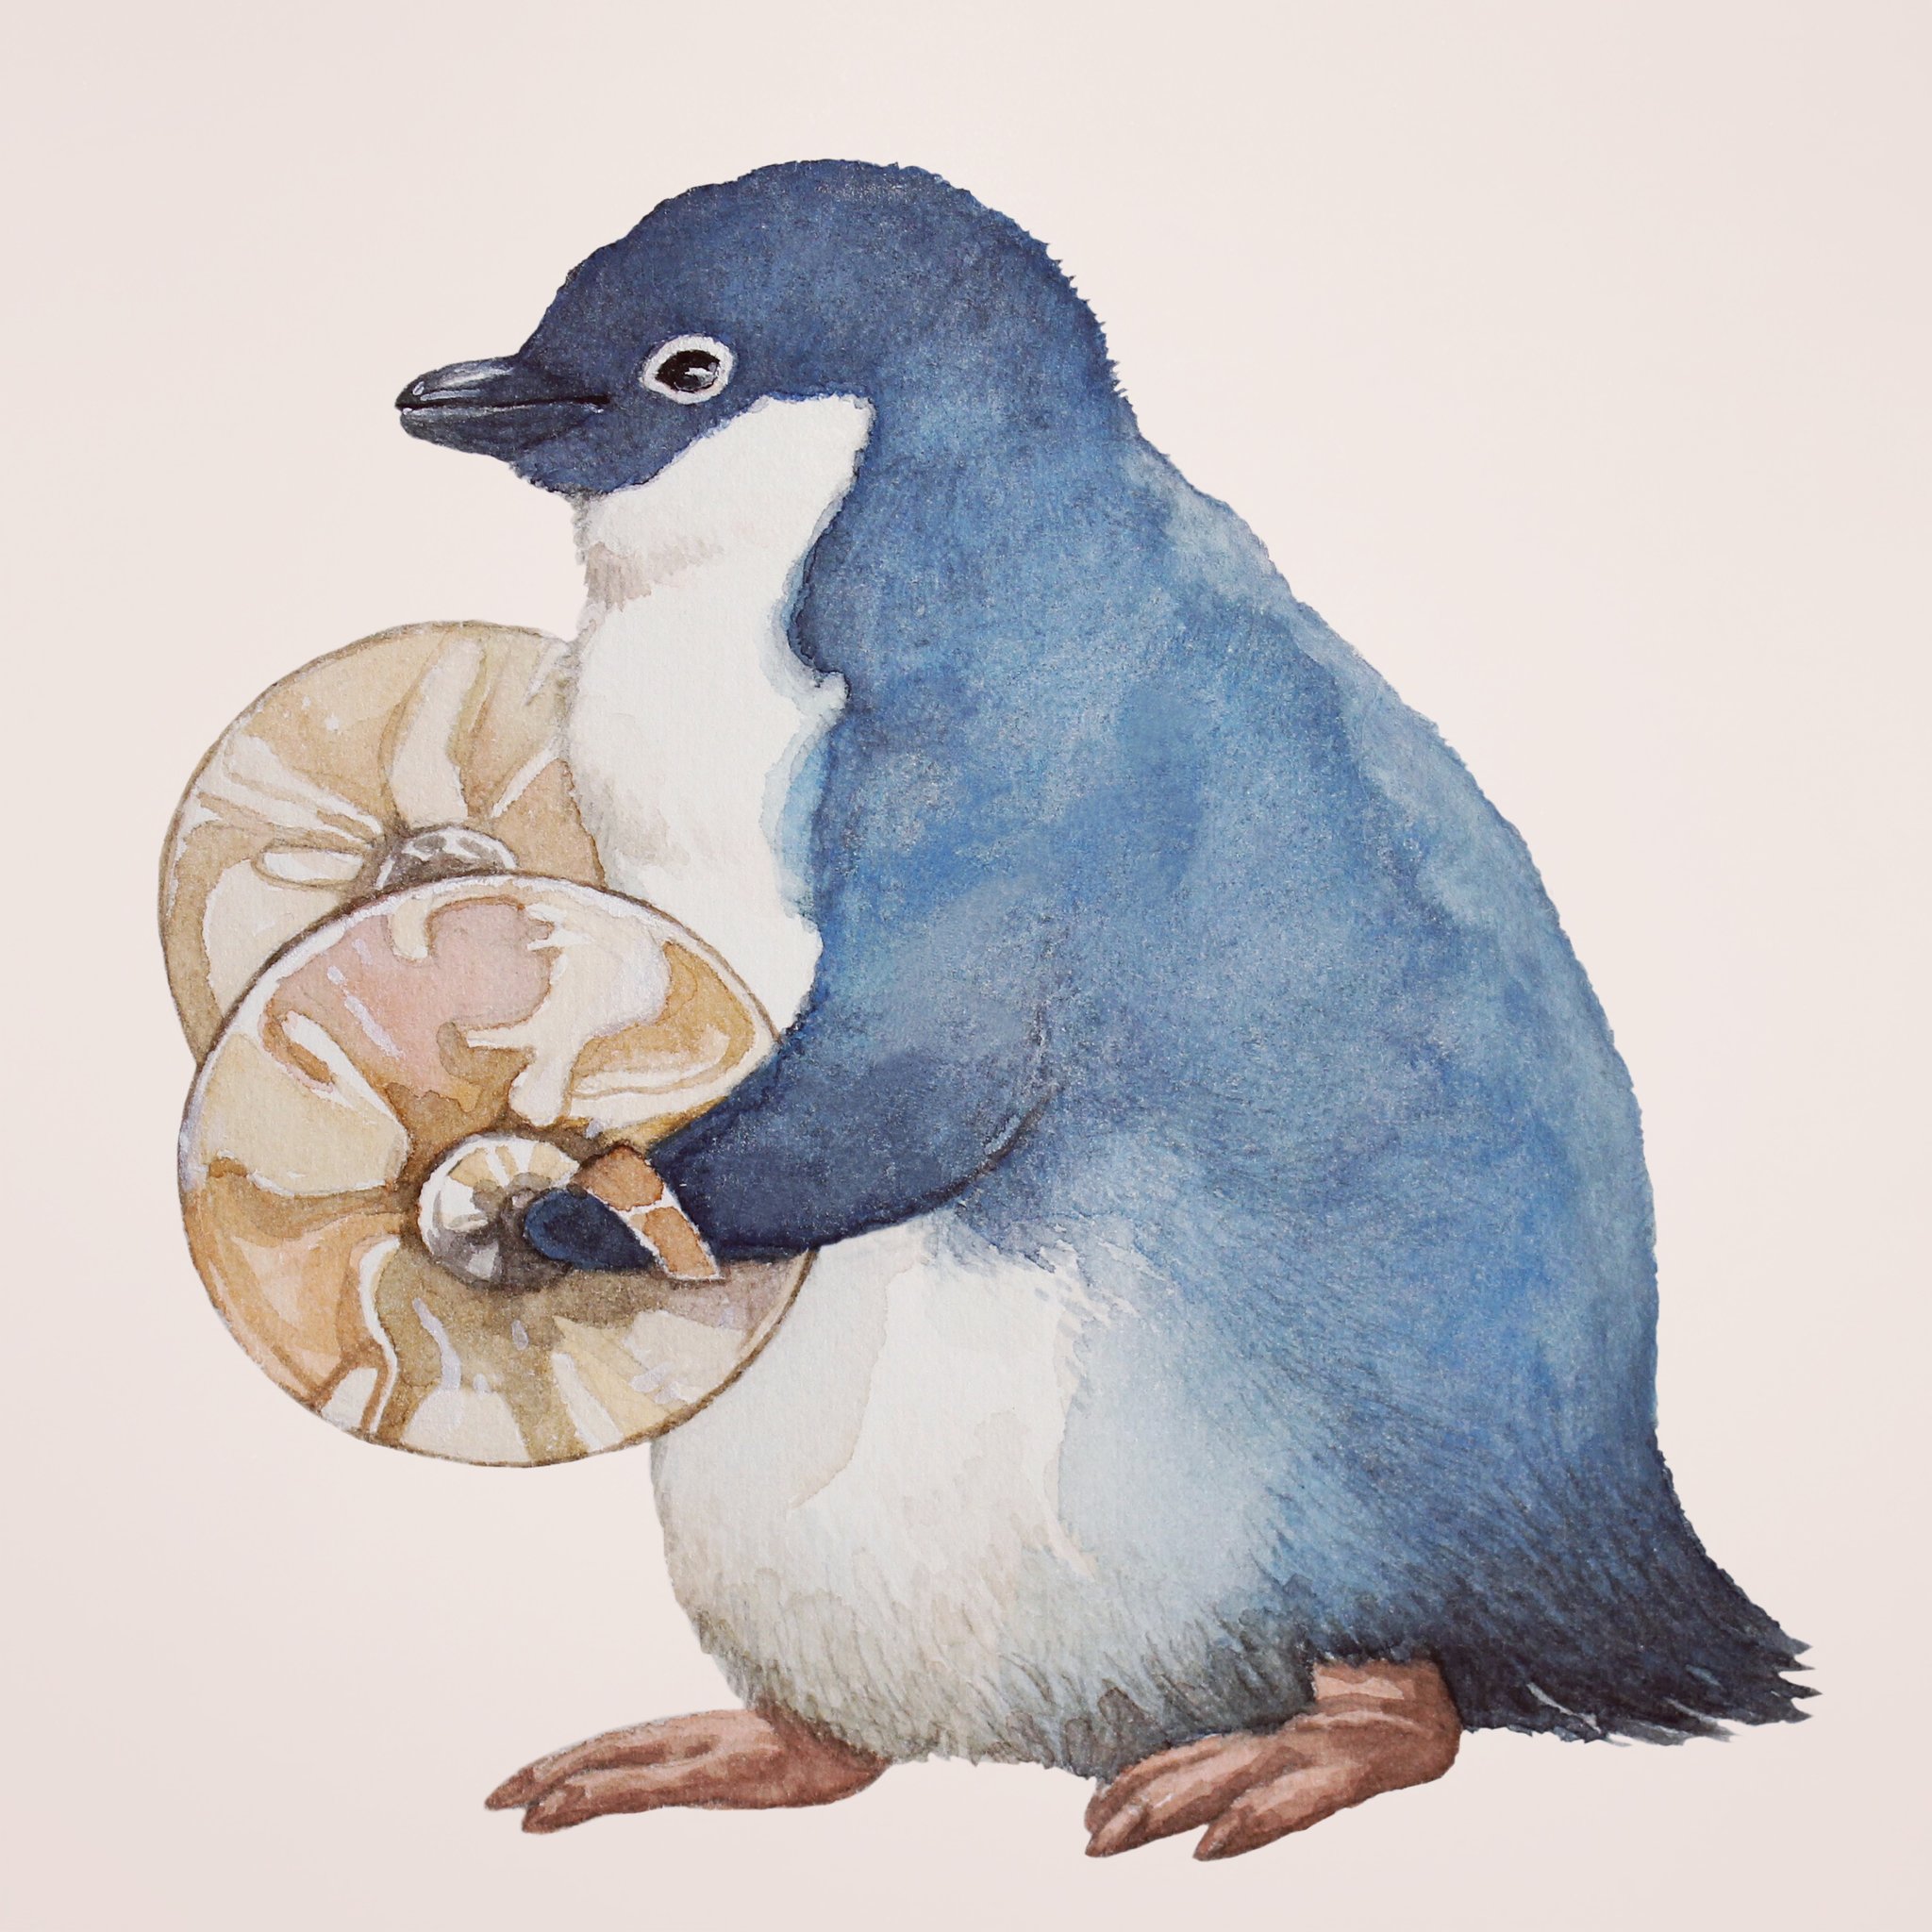 まなつとまふゆ Tokyo ハンドメイド祭 Twitterren Adelie Penguin Watercolor ペンギン ぺんぎん アデリーペンギン 水彩画 T Co Eneaffs49b Twitter